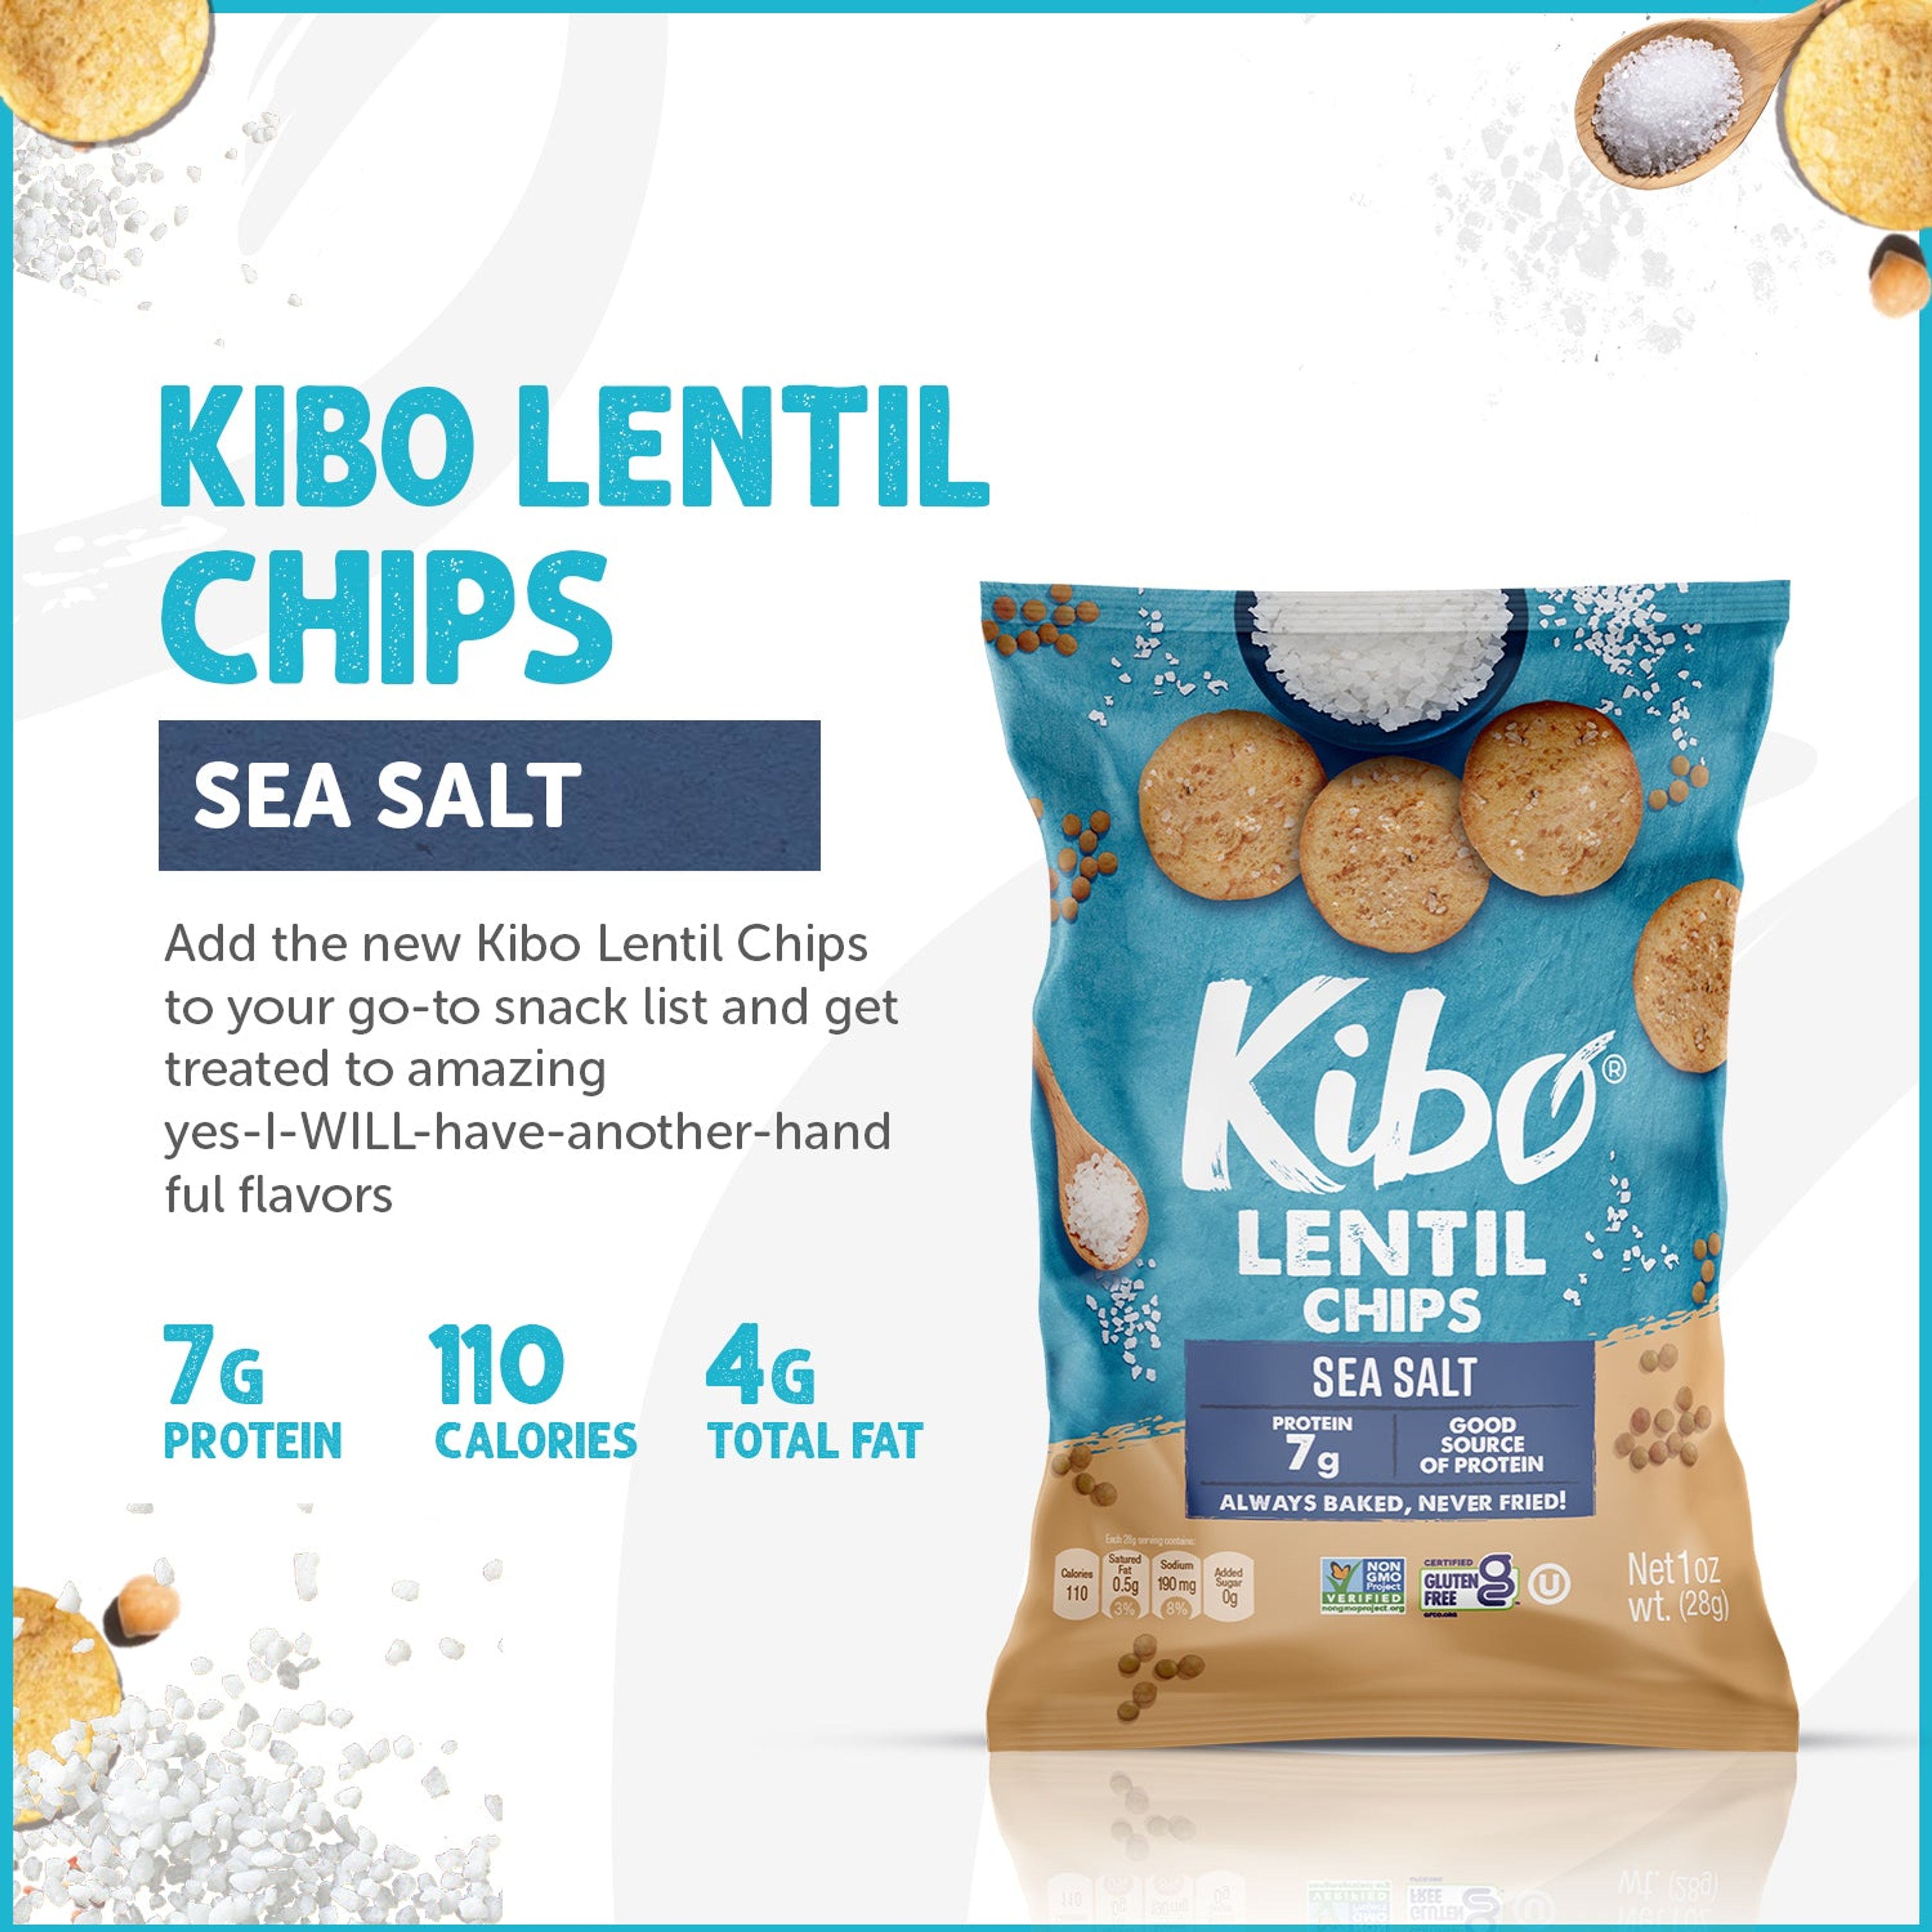 Lentil Chips Sea Salt